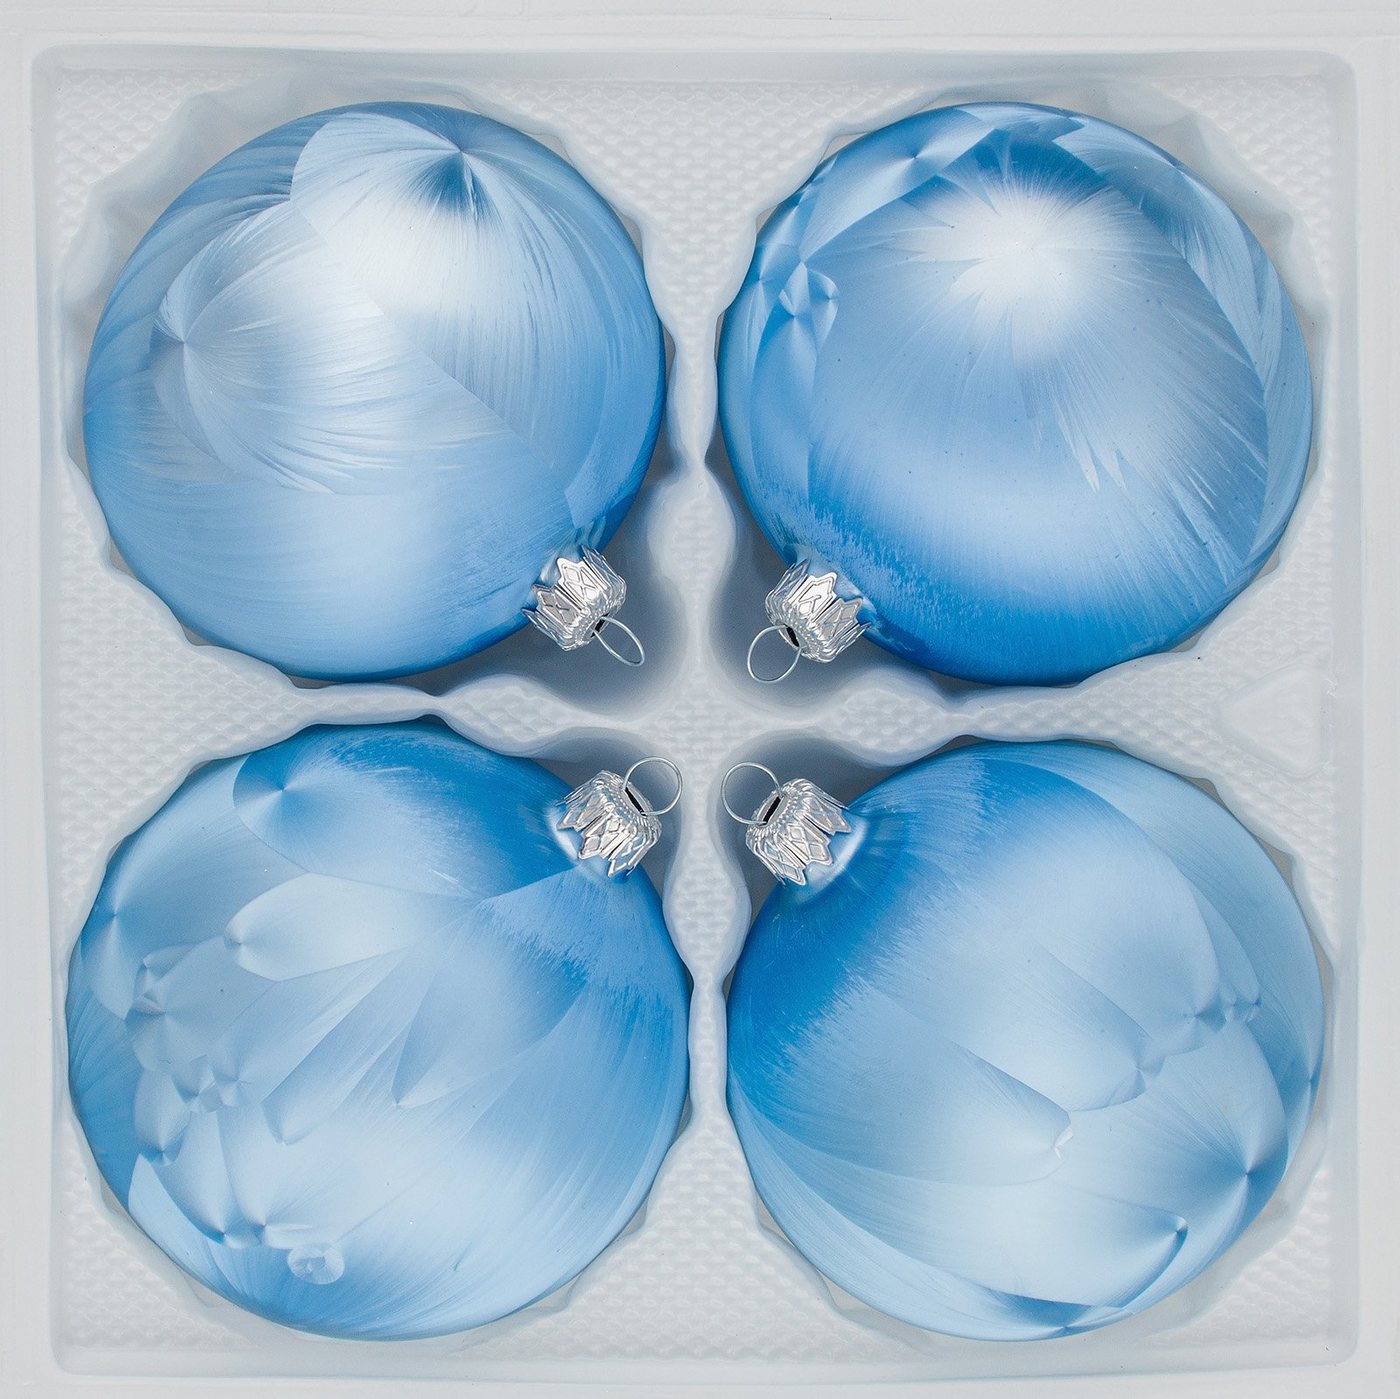 Navidacio Weihnachtsbaumkugel 4 tlg. Glas-Weihnachtskugeln Set 10cm Ø in Ice Blau" Eislack" von Navidacio